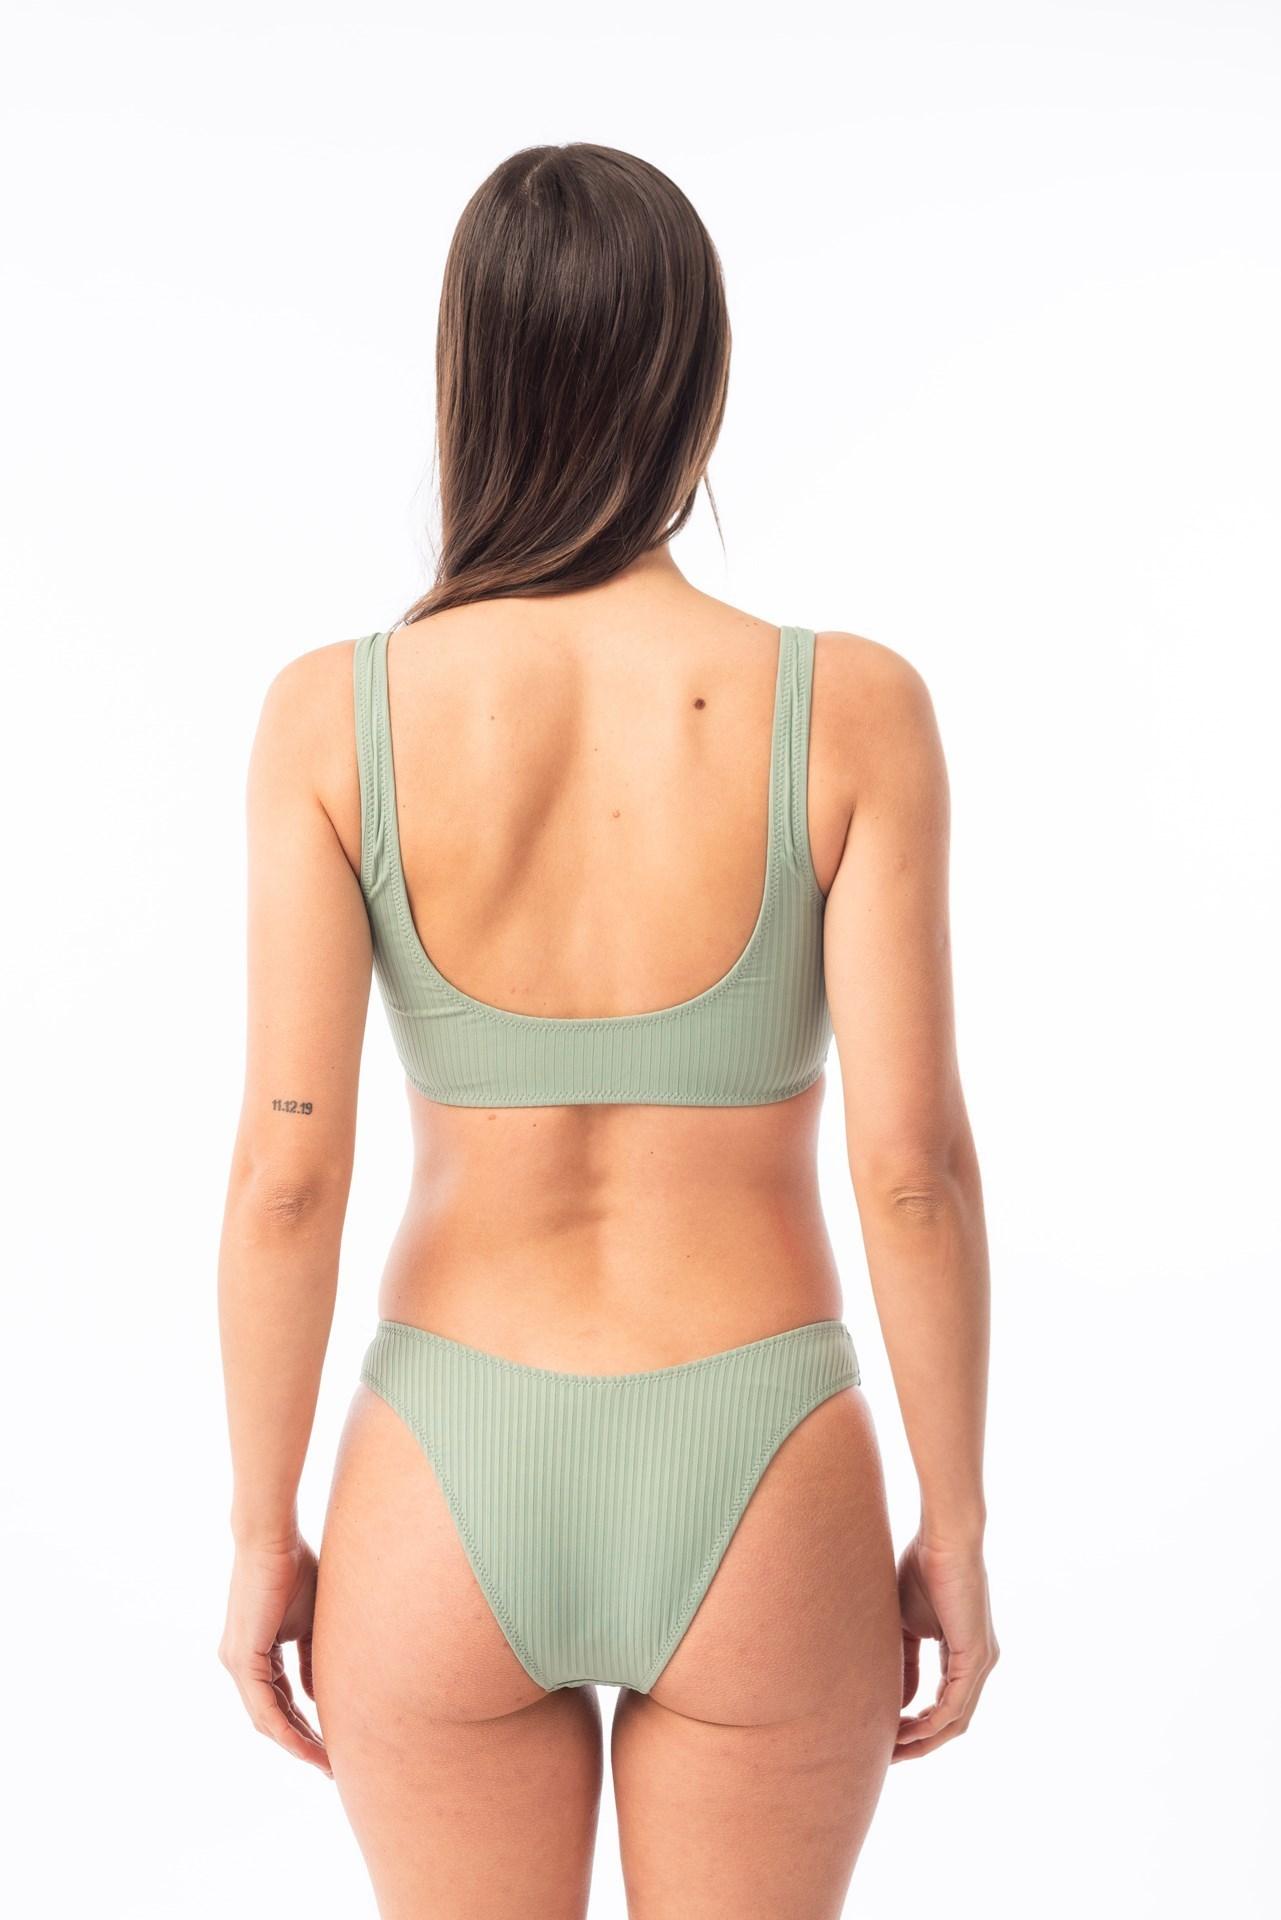 Paraiso- Bikini Top con Argollas verde agua l